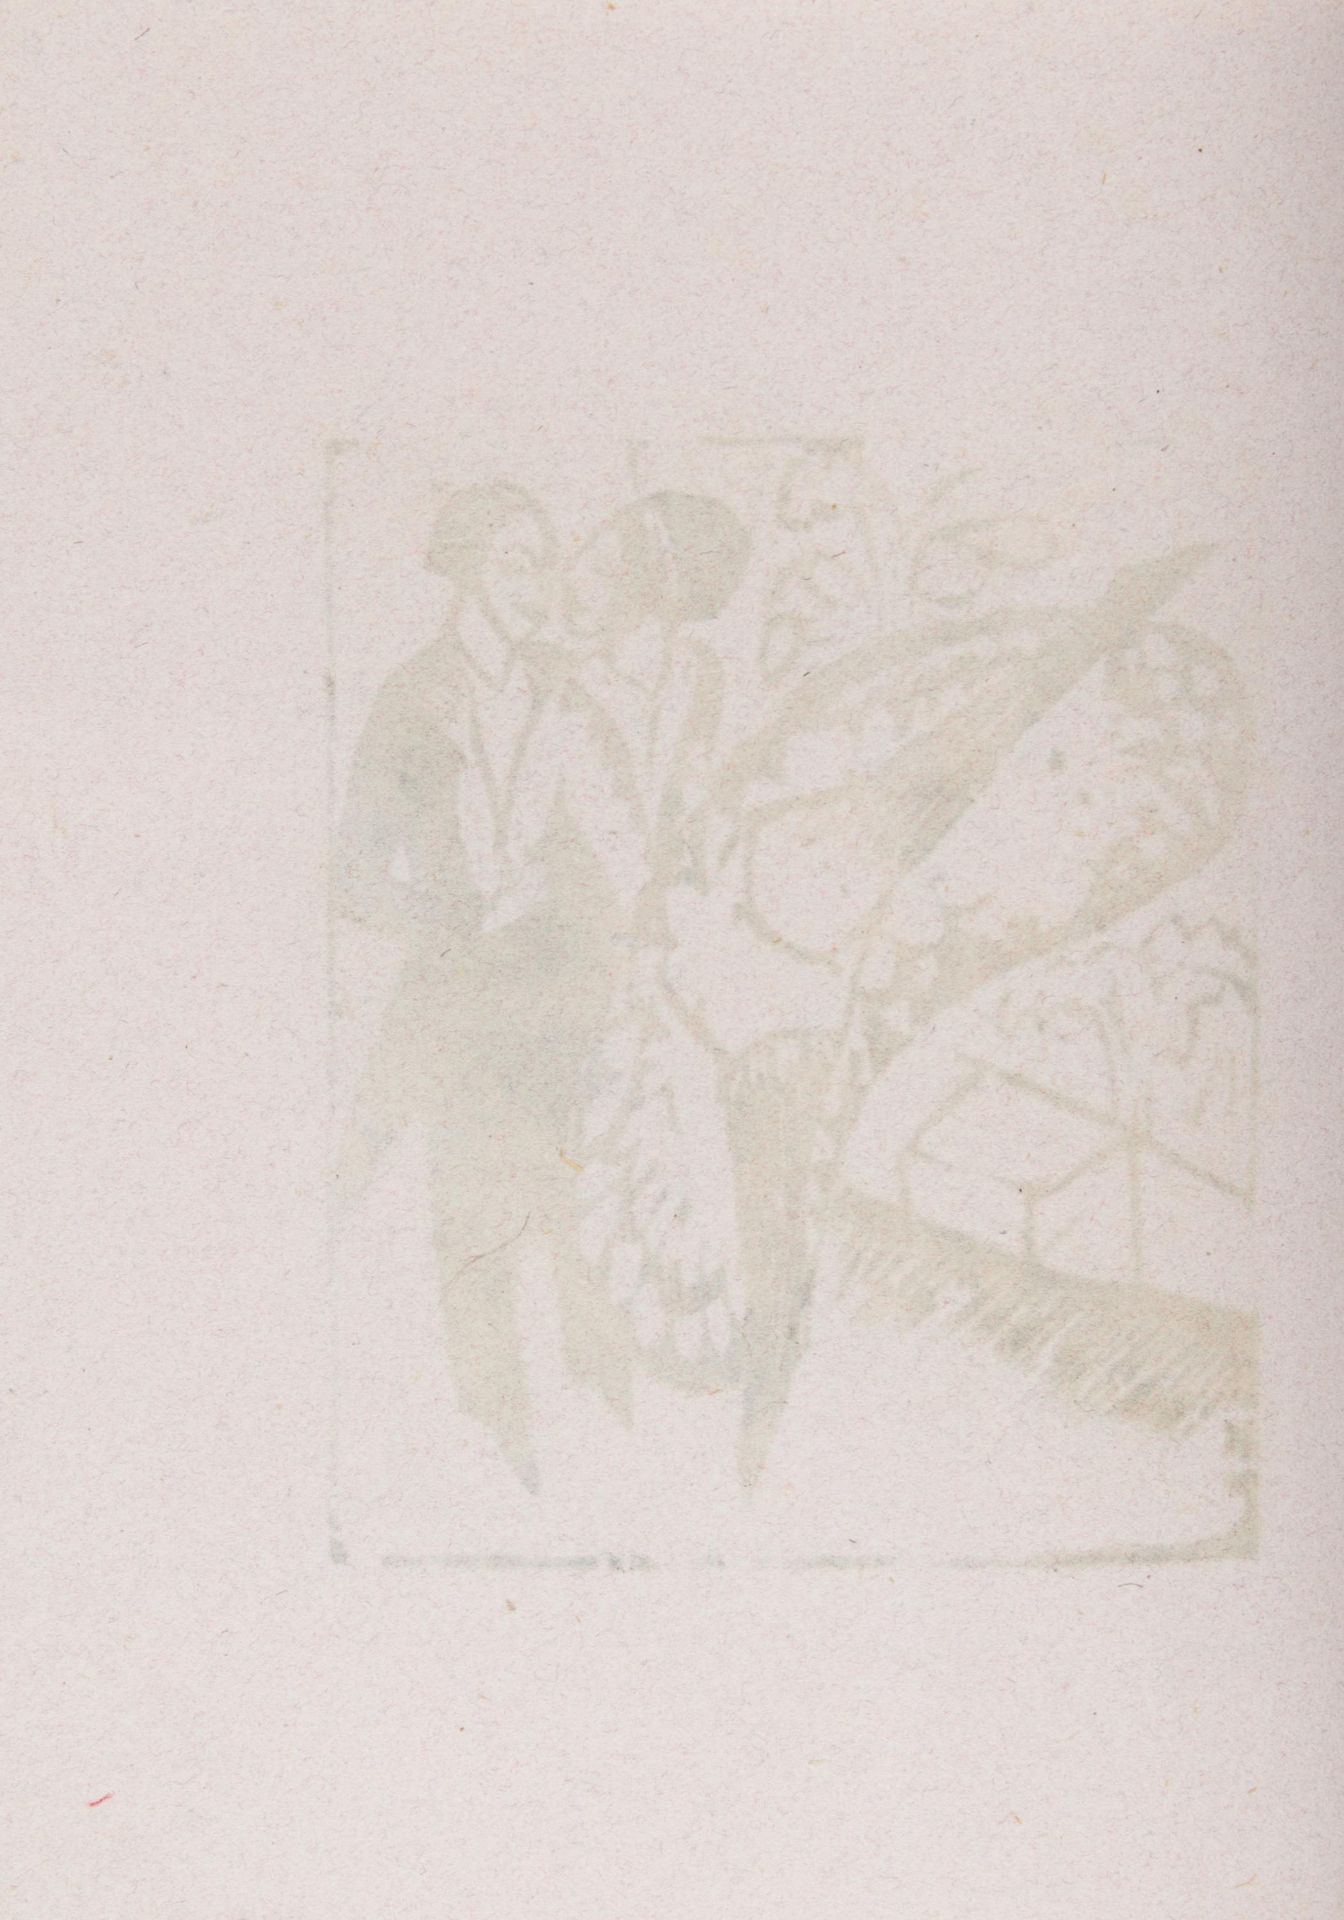 Mappenwerk Ausstellung von Künstlergruppe Brücke. 1912. Heft zur Ausstellung im Kunstsalon Fritz - Image 18 of 20